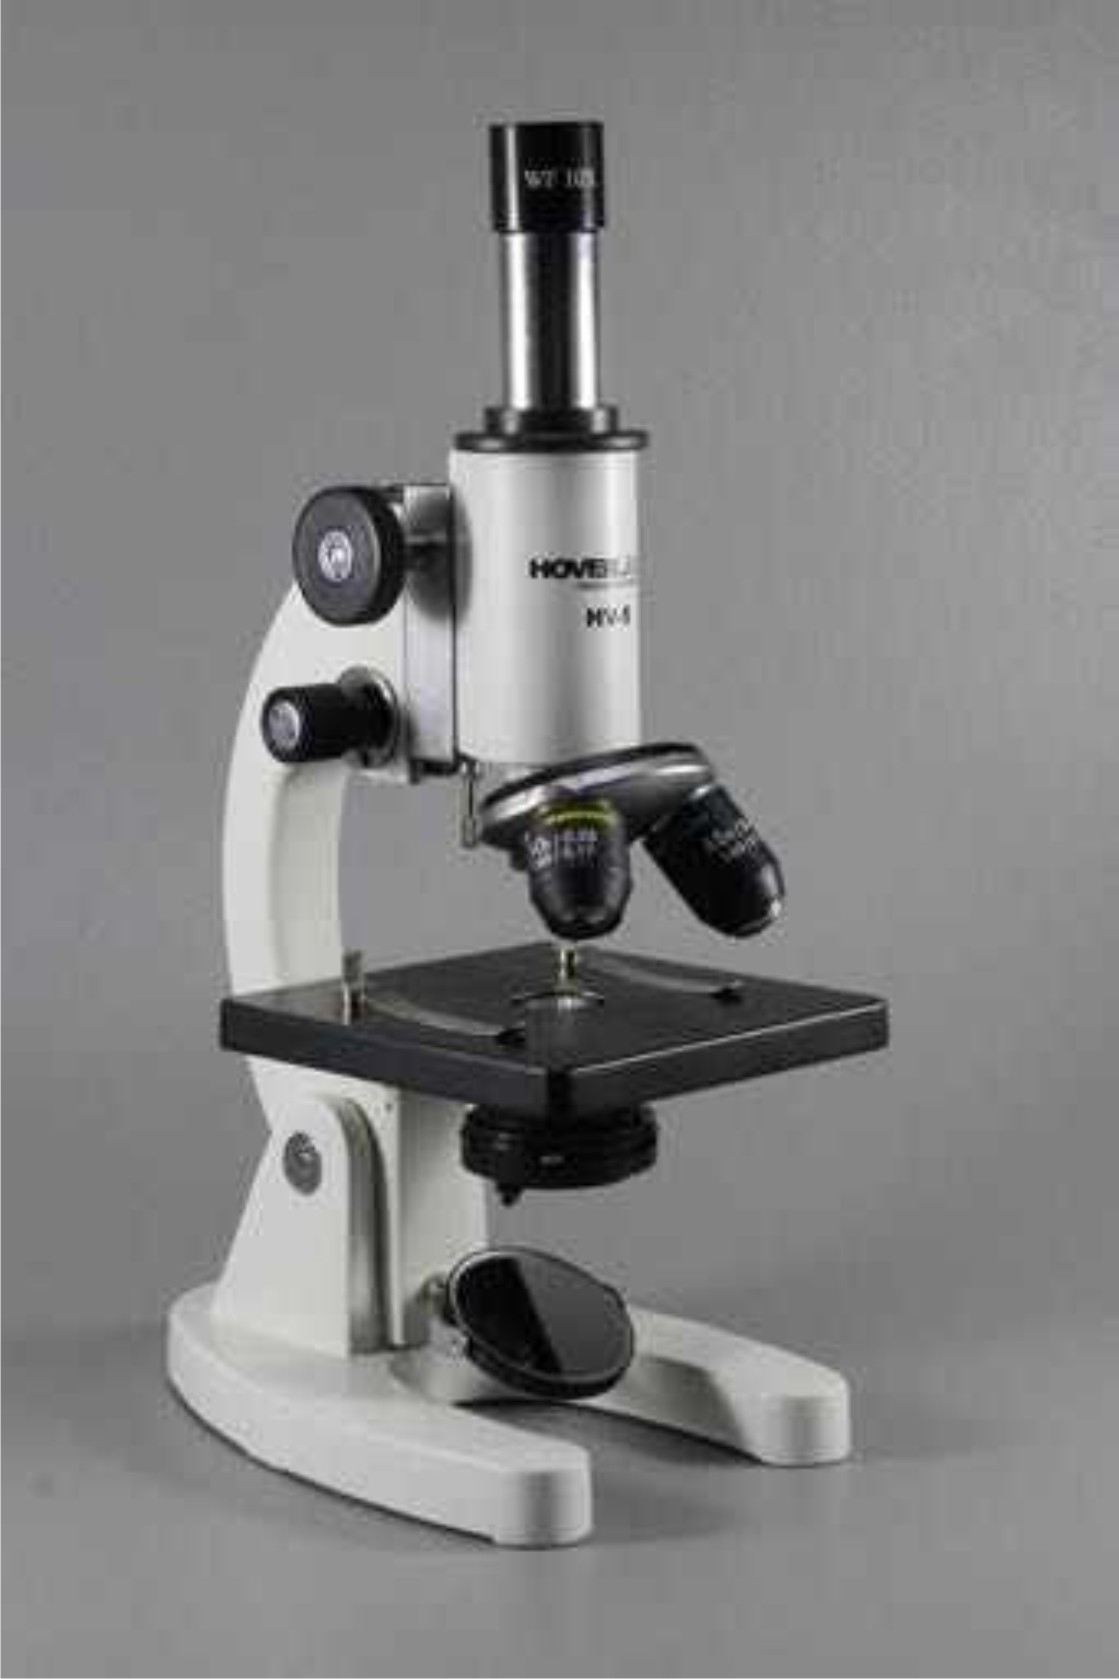  Student Microscope With Fixed Condenser, Model No.: KI - 2240 - FC